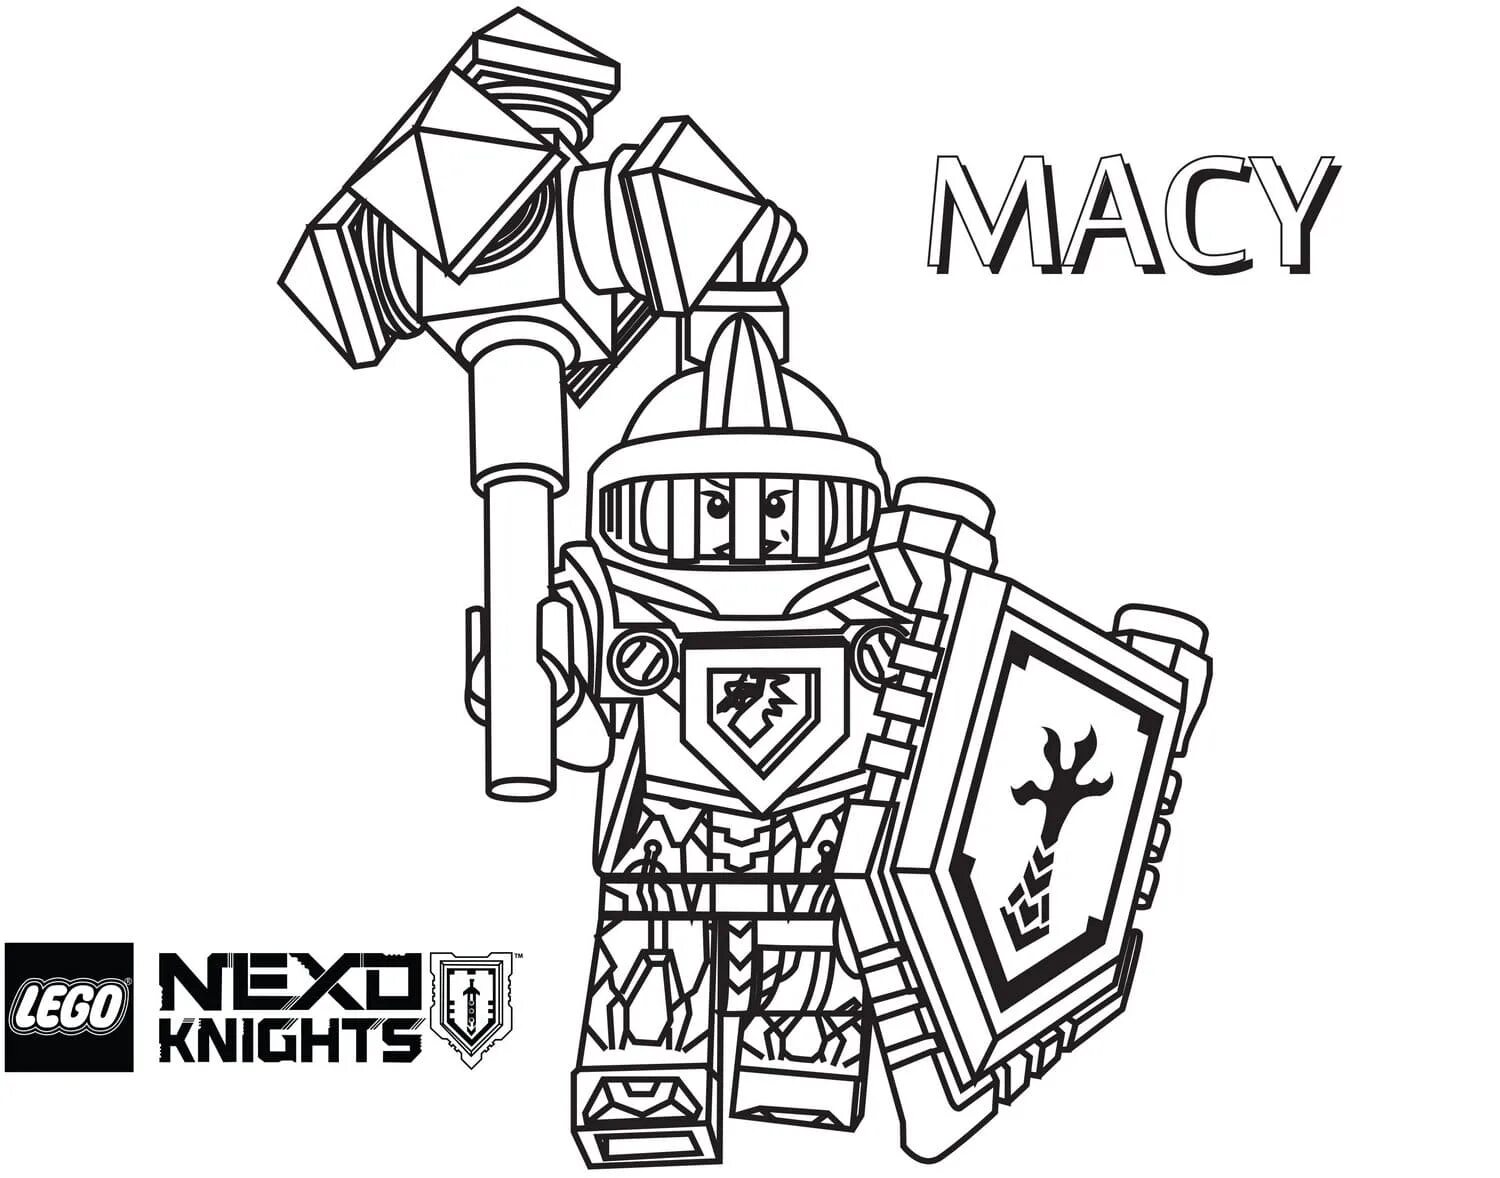 Nexo knights #2